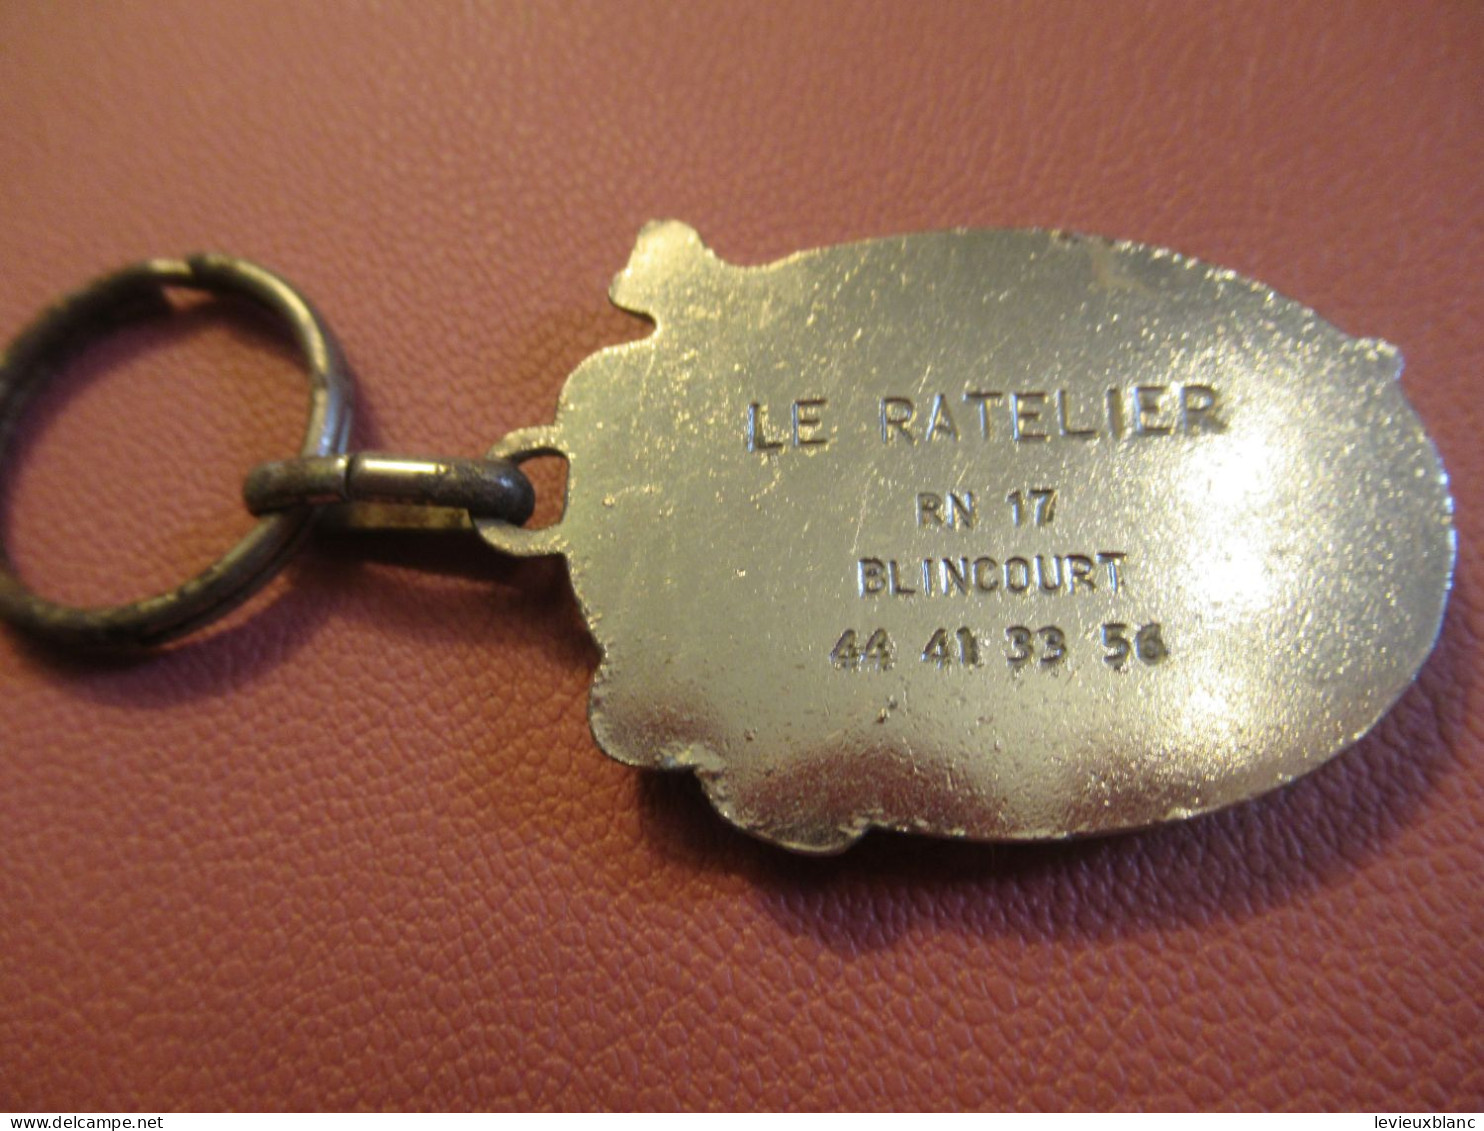 Porte-clé Ancien/ Bar /  Le RATELIER/ RN 17/ Elincourt/ Vers 1960-1970           POC758 - Key-rings